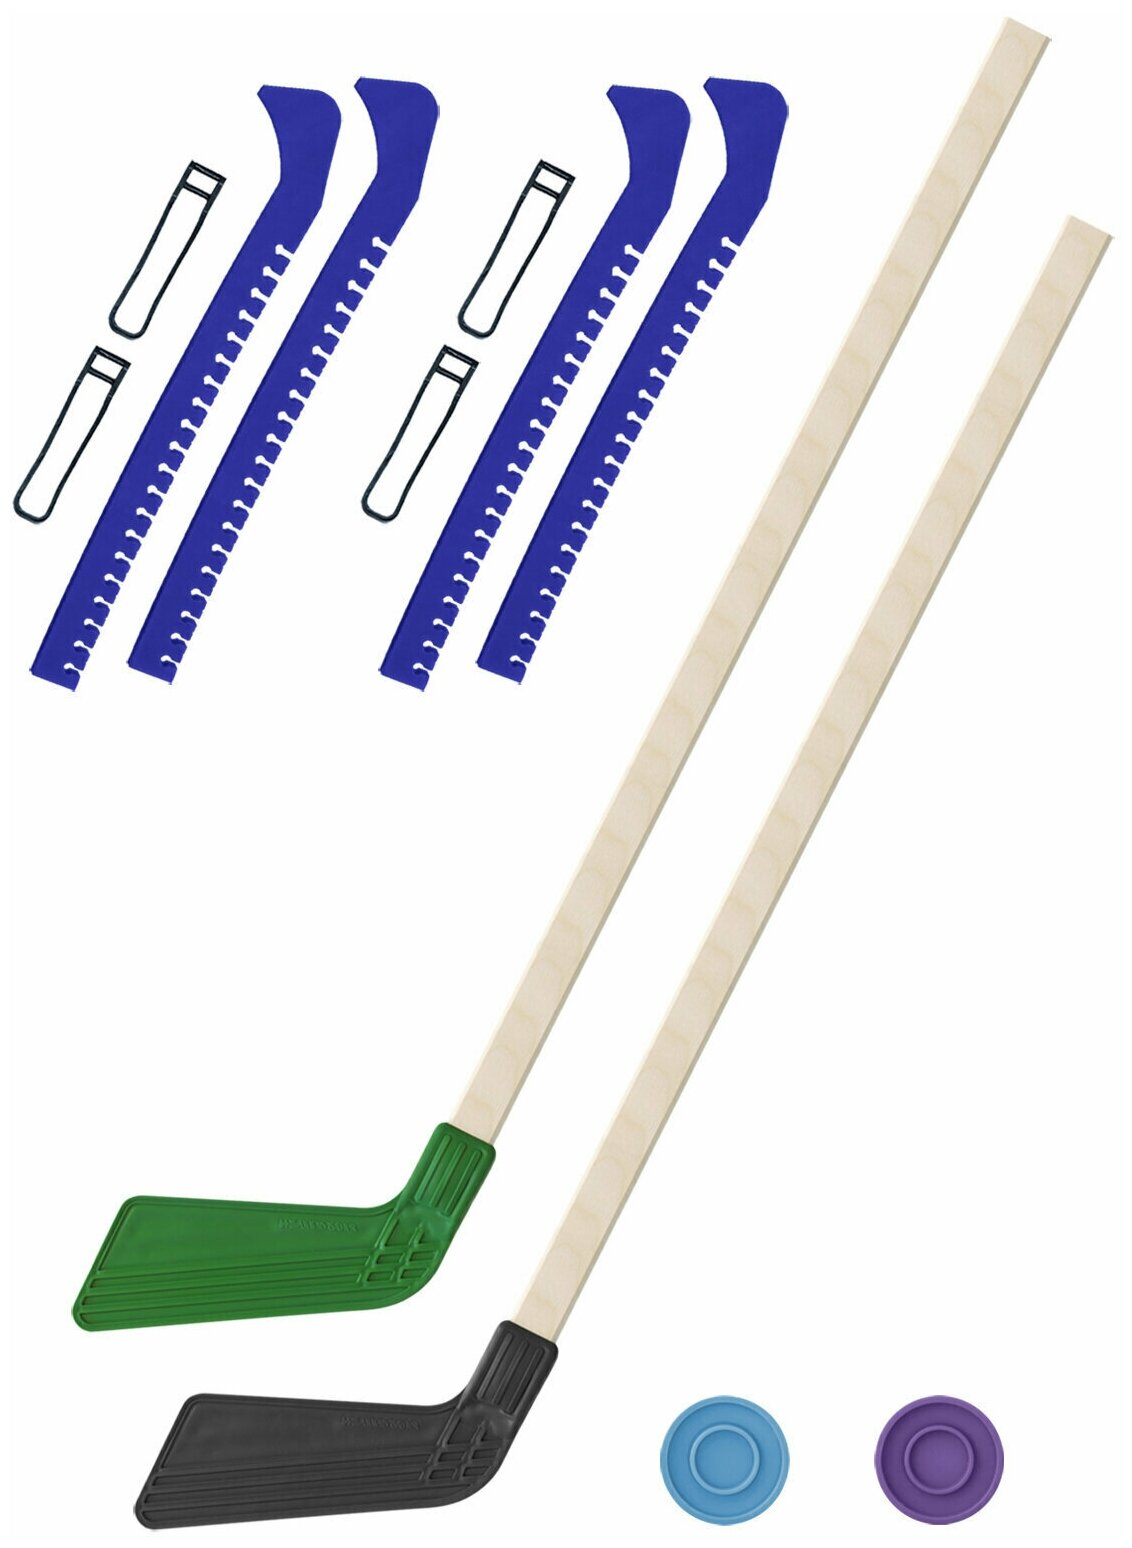 Детский хоккейный набор для игр на улице Клюшка хоккейная детская 2 шт зелёная и чёрная 80 см.+2 шайбы + Чехлы для коньков синие - 2 шт.